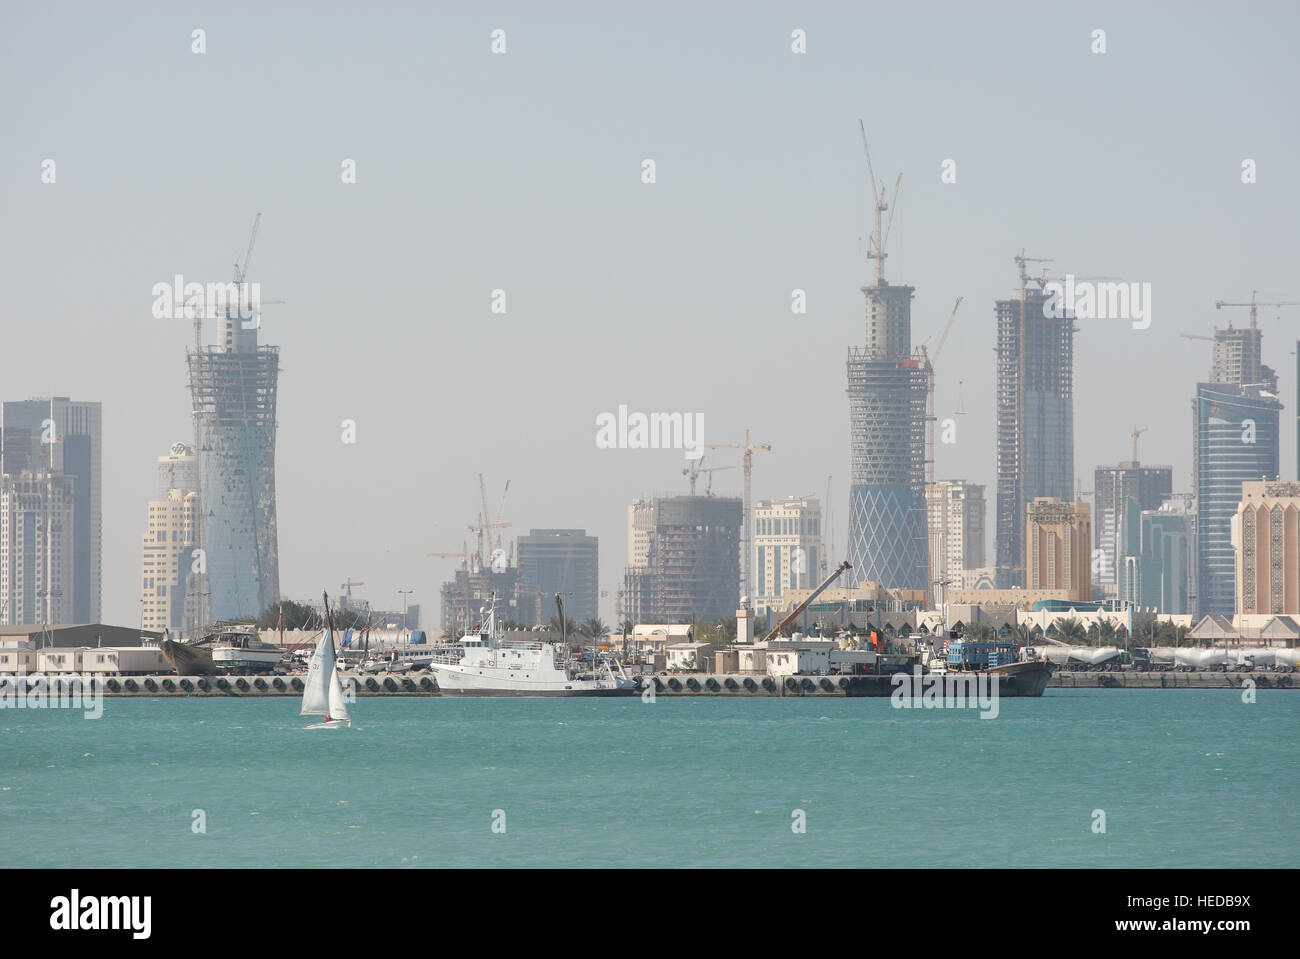 Vista panorámica de la Bahía de Doha, vista de la ensenada del distrito de West Bay con sus rascacielos y de construcción, Doha, Qatar Foto de stock